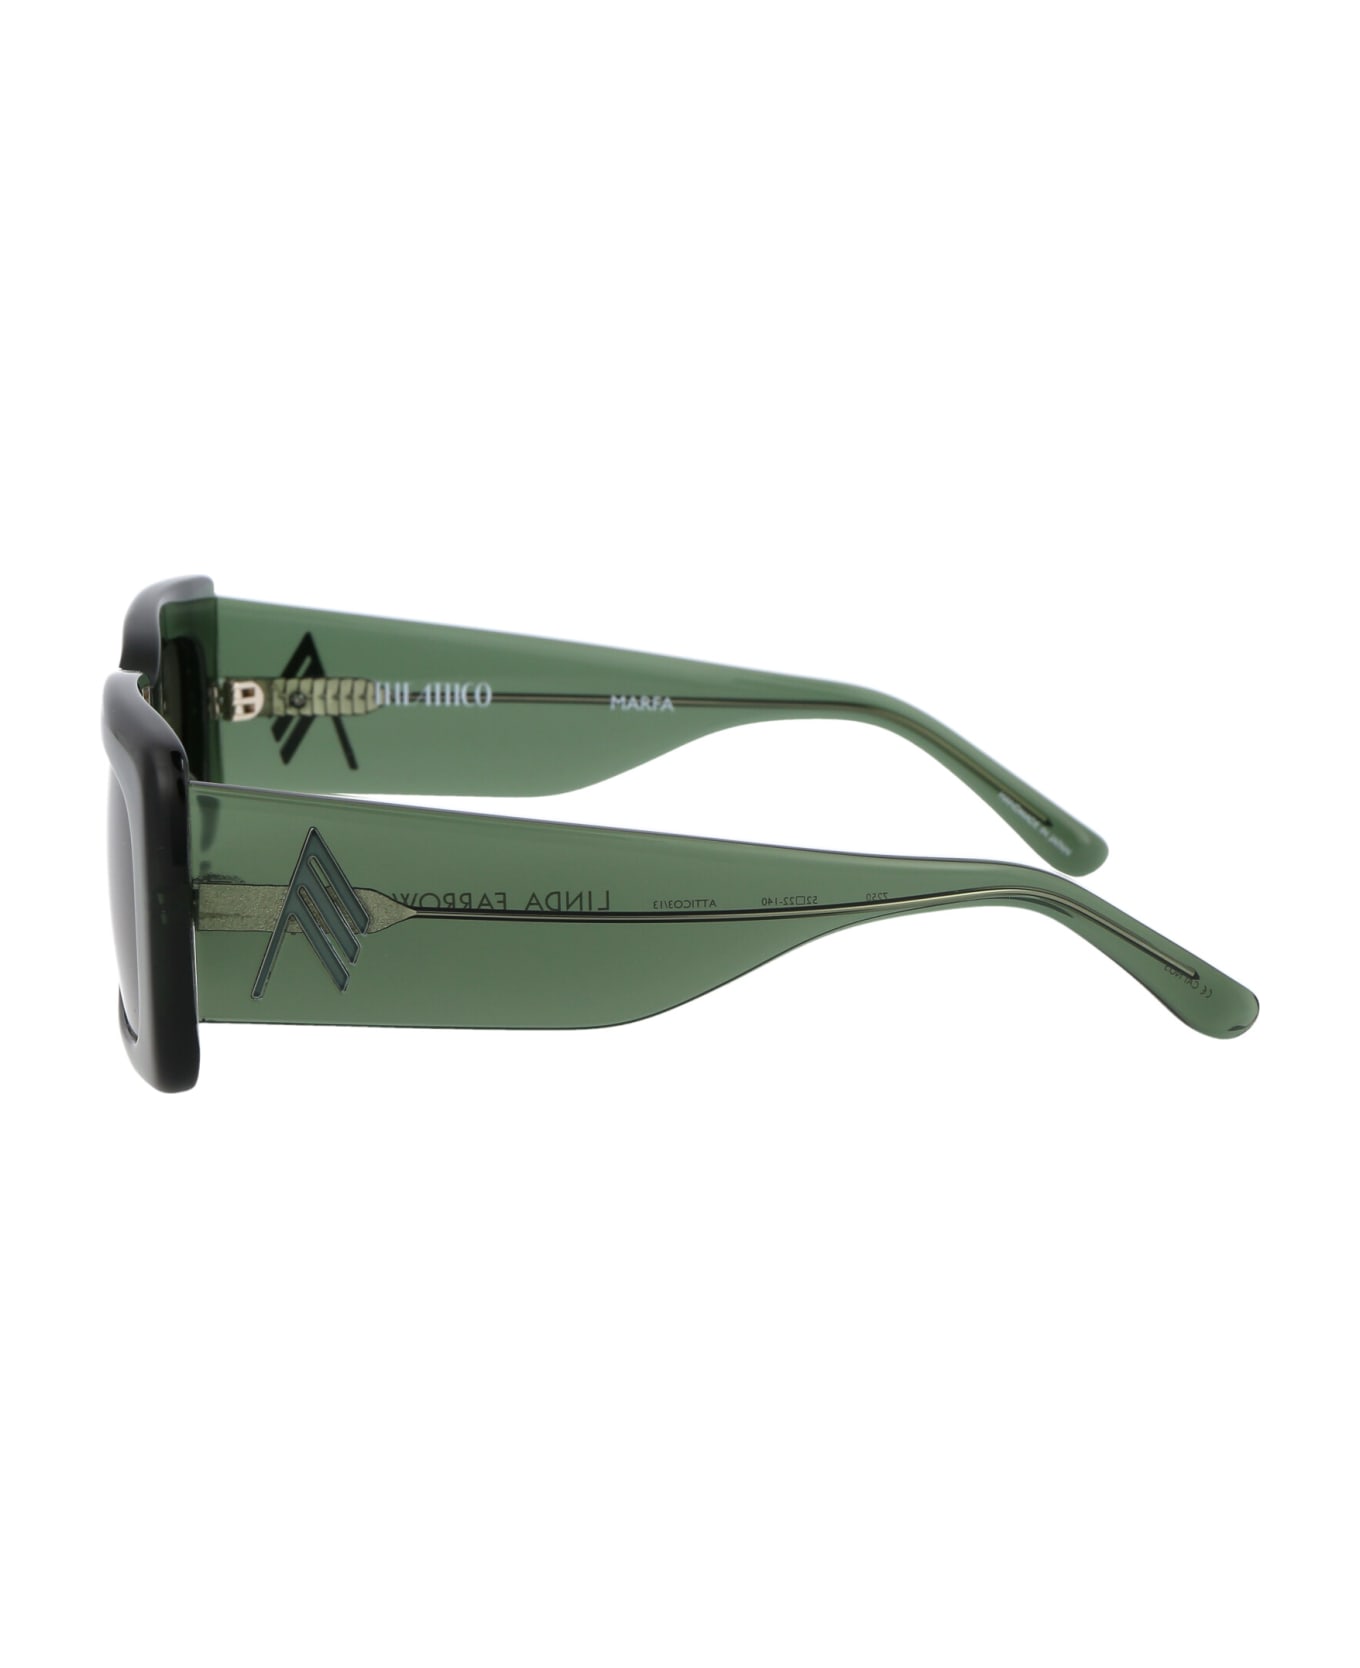 The Attico Marfa Sunglasses - 013 GREEN GREEN GREEN